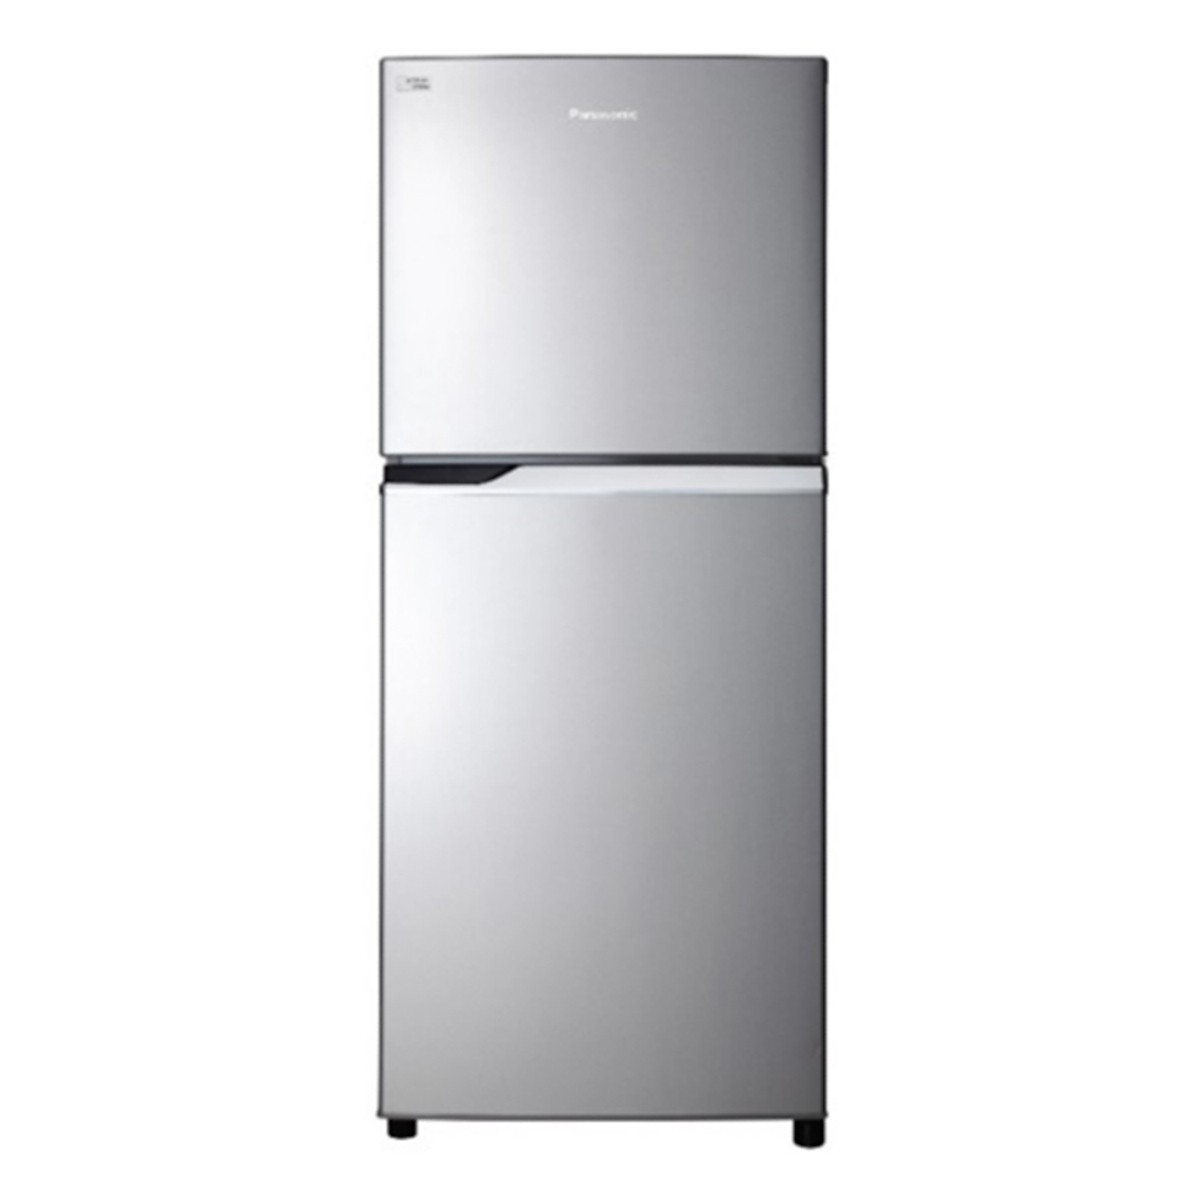 Tủ Lạnh Inverter Panasonic NR-BL267VSV1 (234 lít) - Bạc - Hàng chính hãng